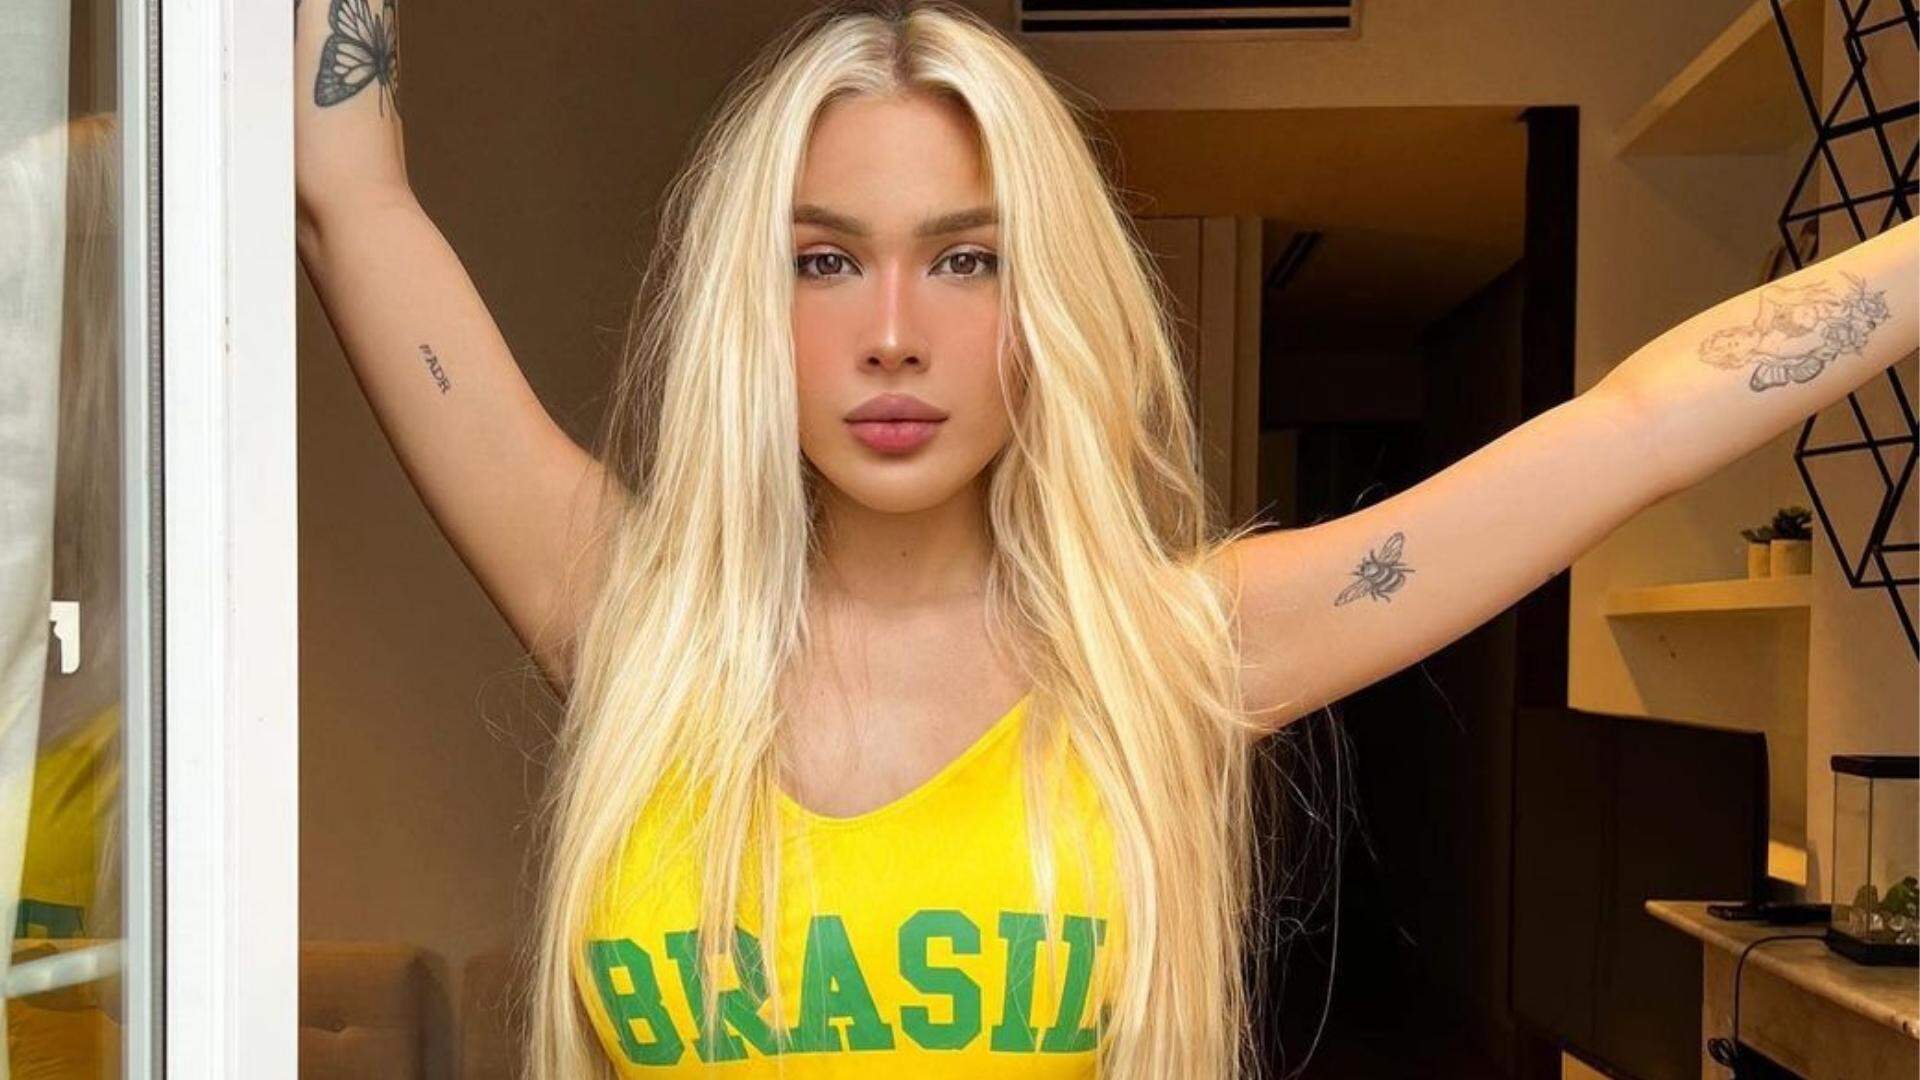 Rumo ao hexa! Karoline Lima provoca no Instagram com maiô da Seleção cavado na virilha - Metropolitana FM